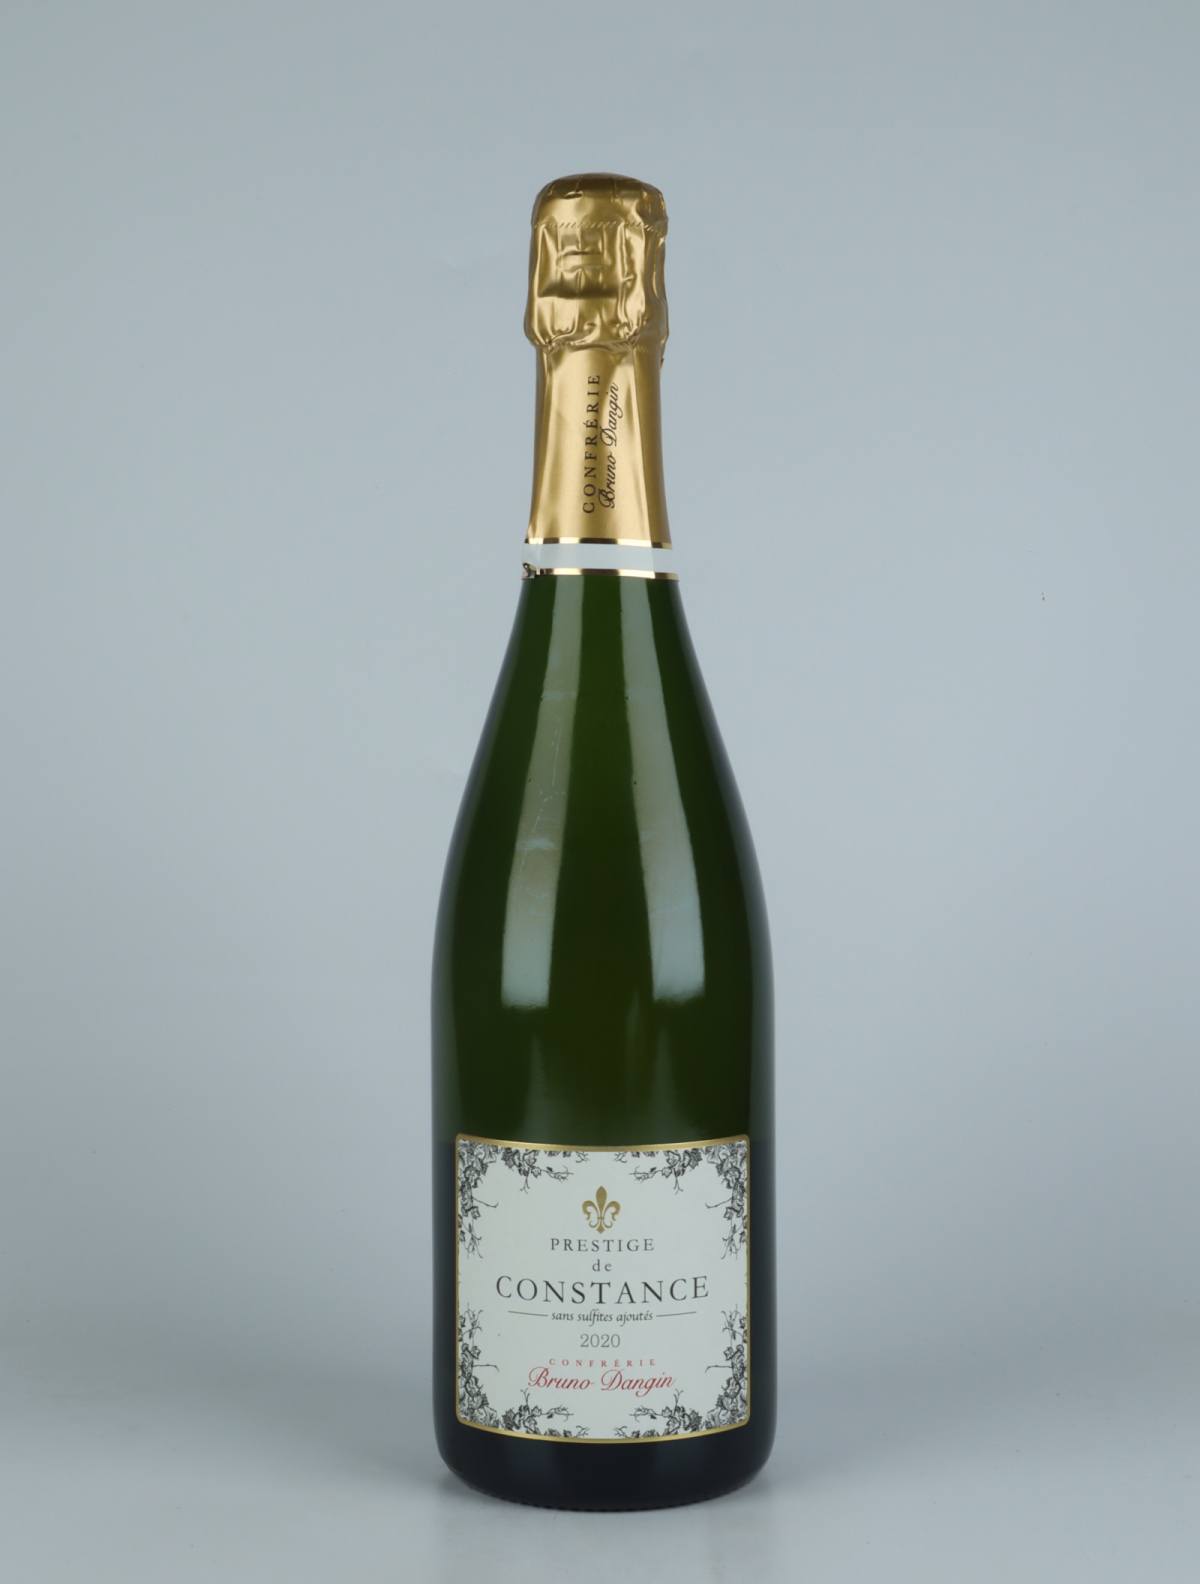 A bottle N.V. Crémant Extra Brut - Prestige de Constance Sparkling from Domaine Bruno Dangin, Burgundy in France